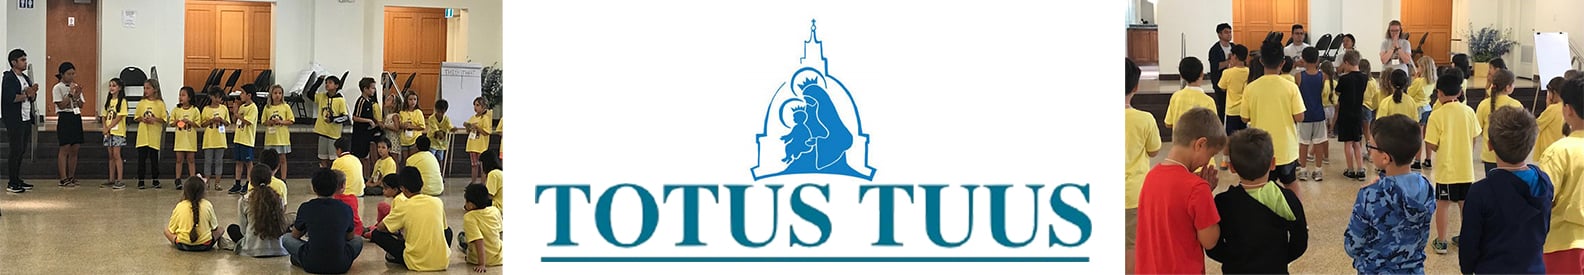 Totus Tuus Web Banner